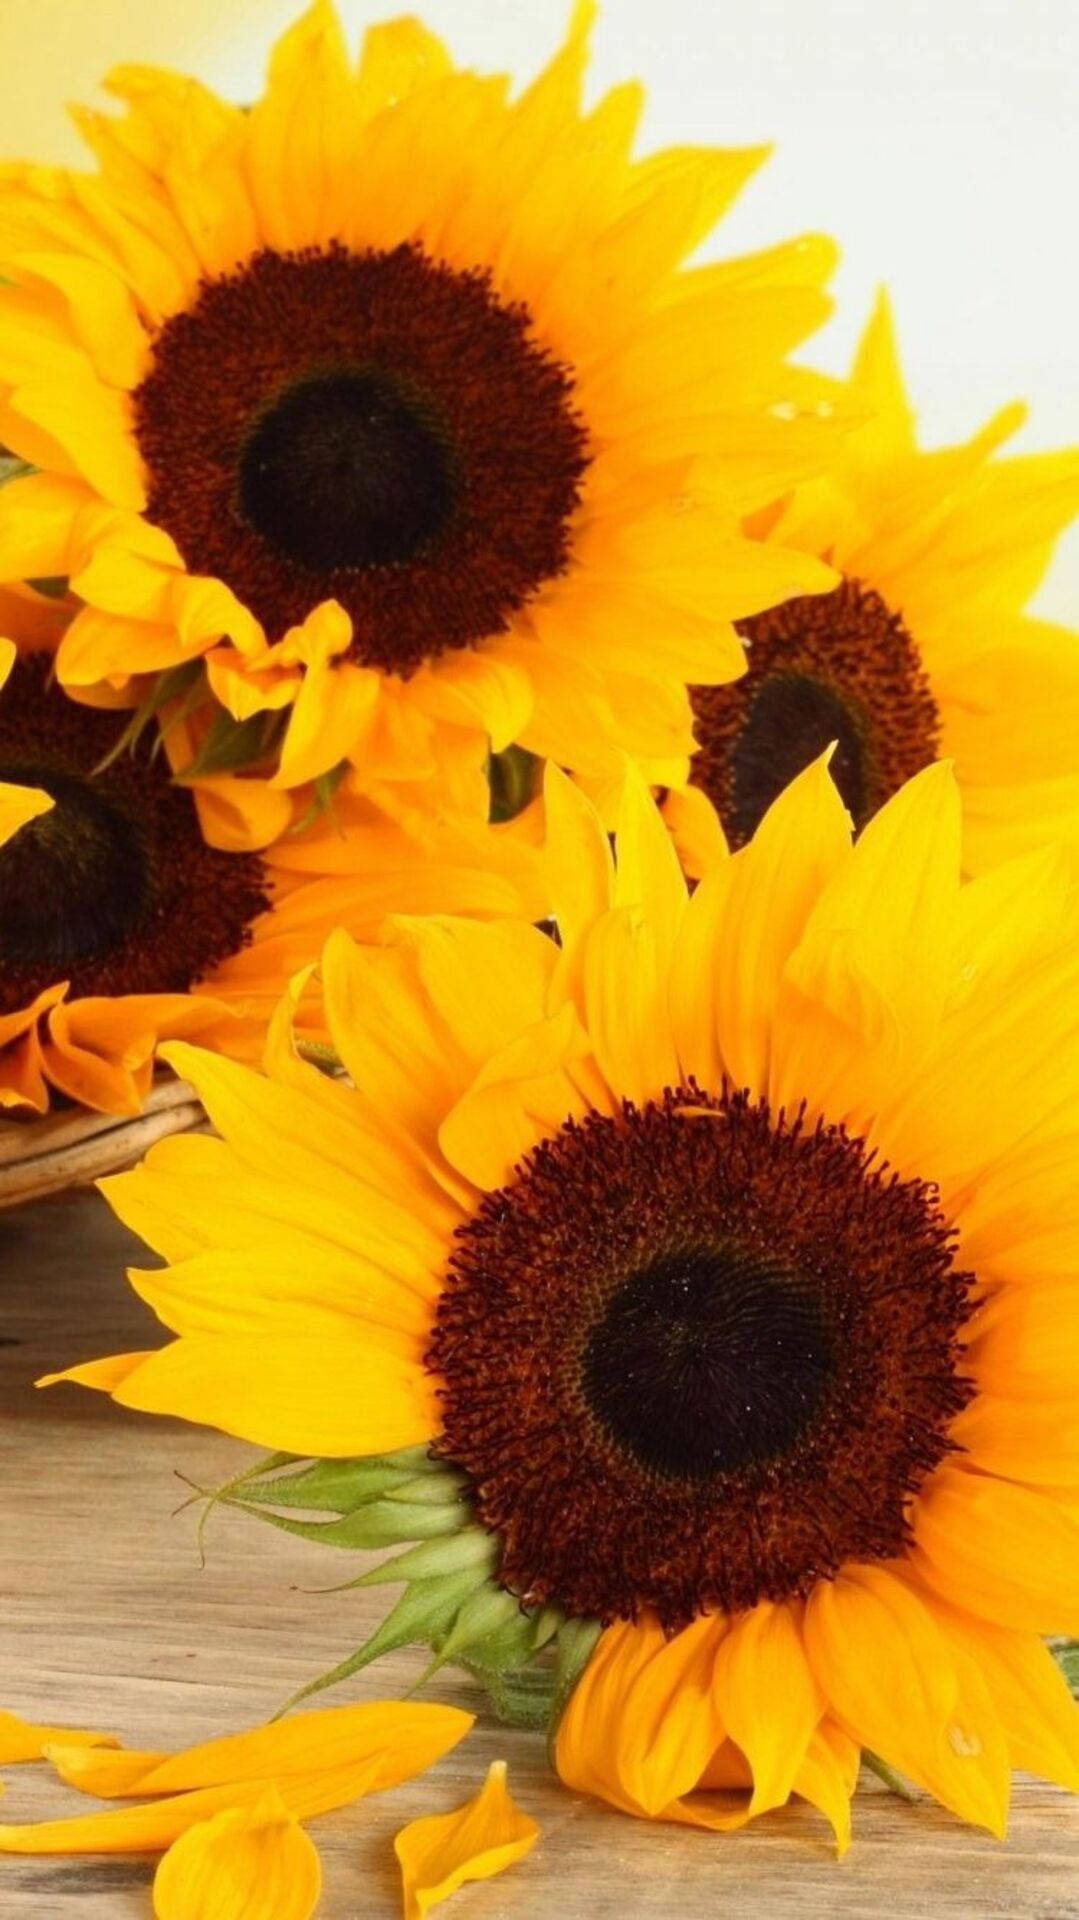 Lovely Common Sunflower Iphone Wallpaper